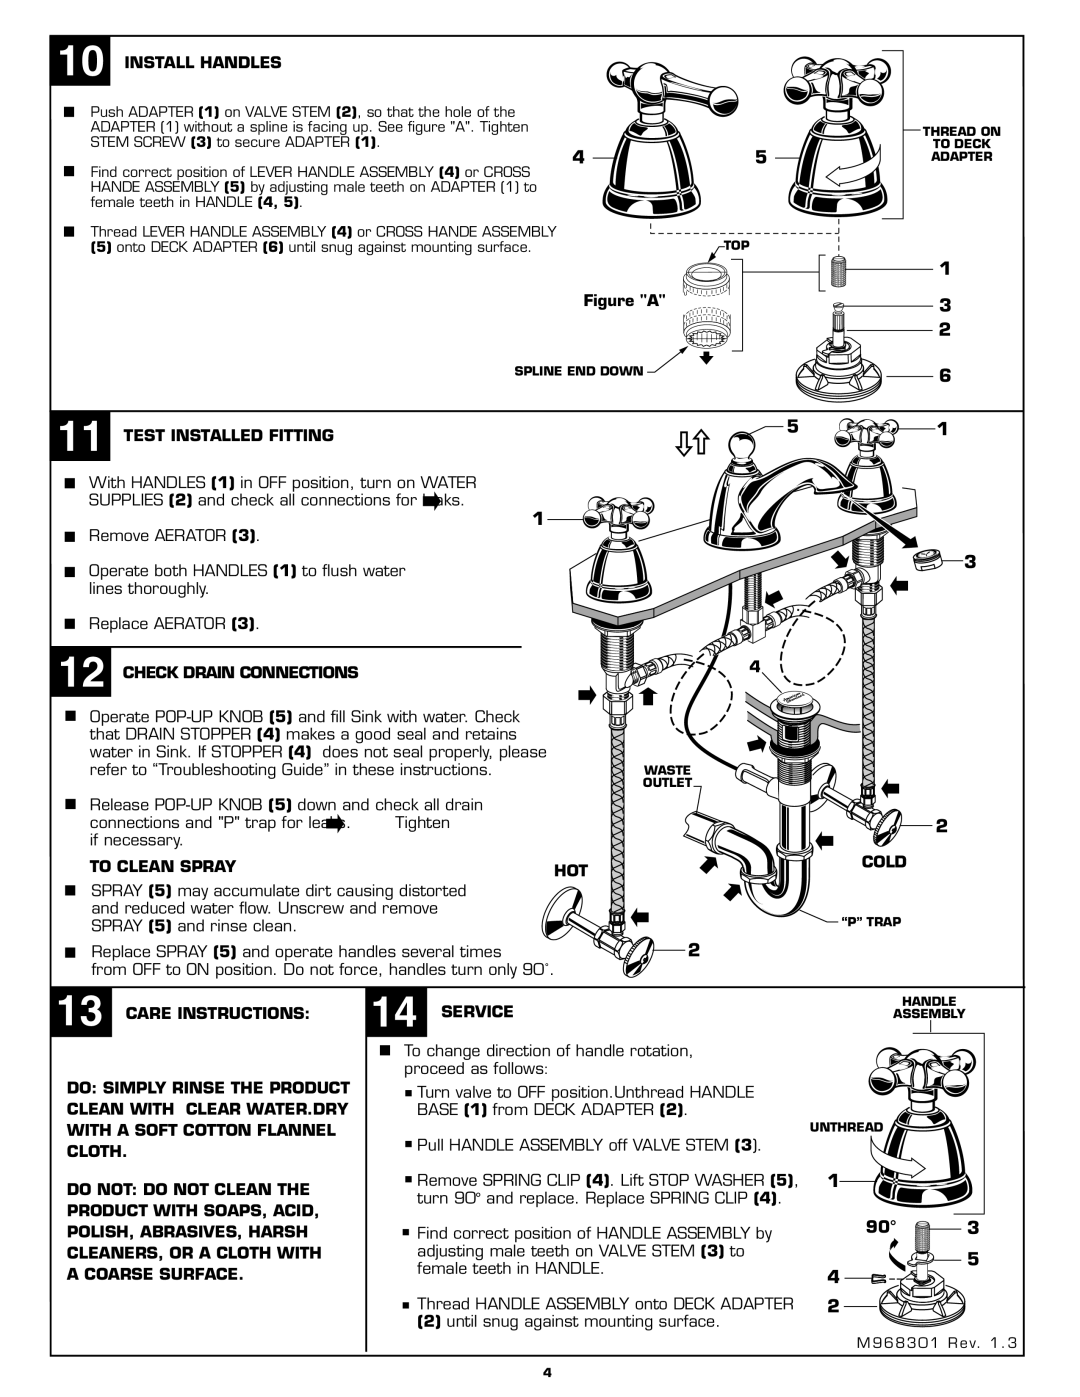 American Standard 2373.821 installation instructions Install Handles 